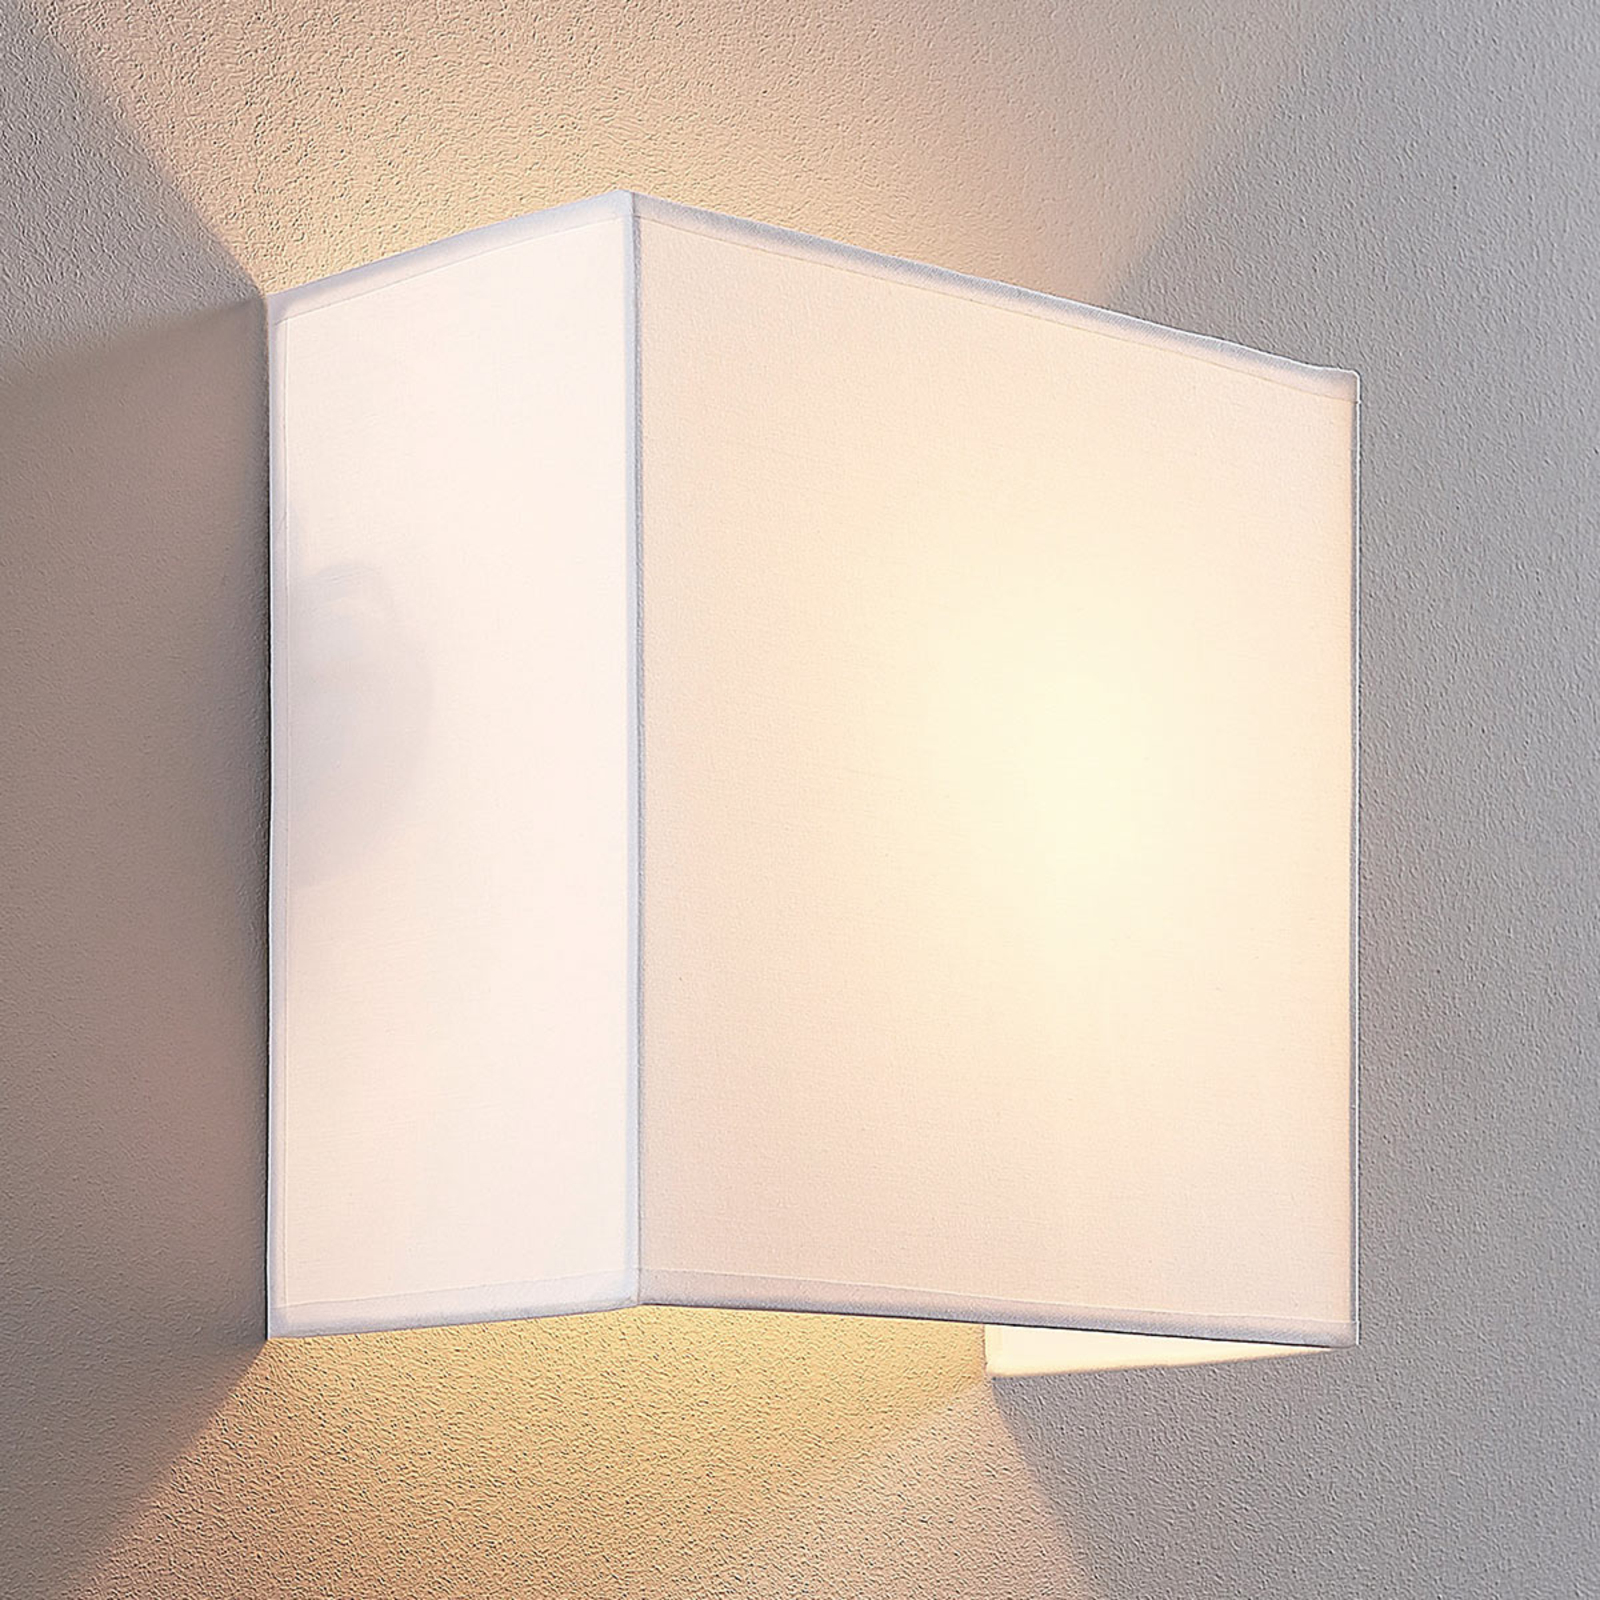 Adea væglampe i stof, 25 cm, kvadratisk, hvid